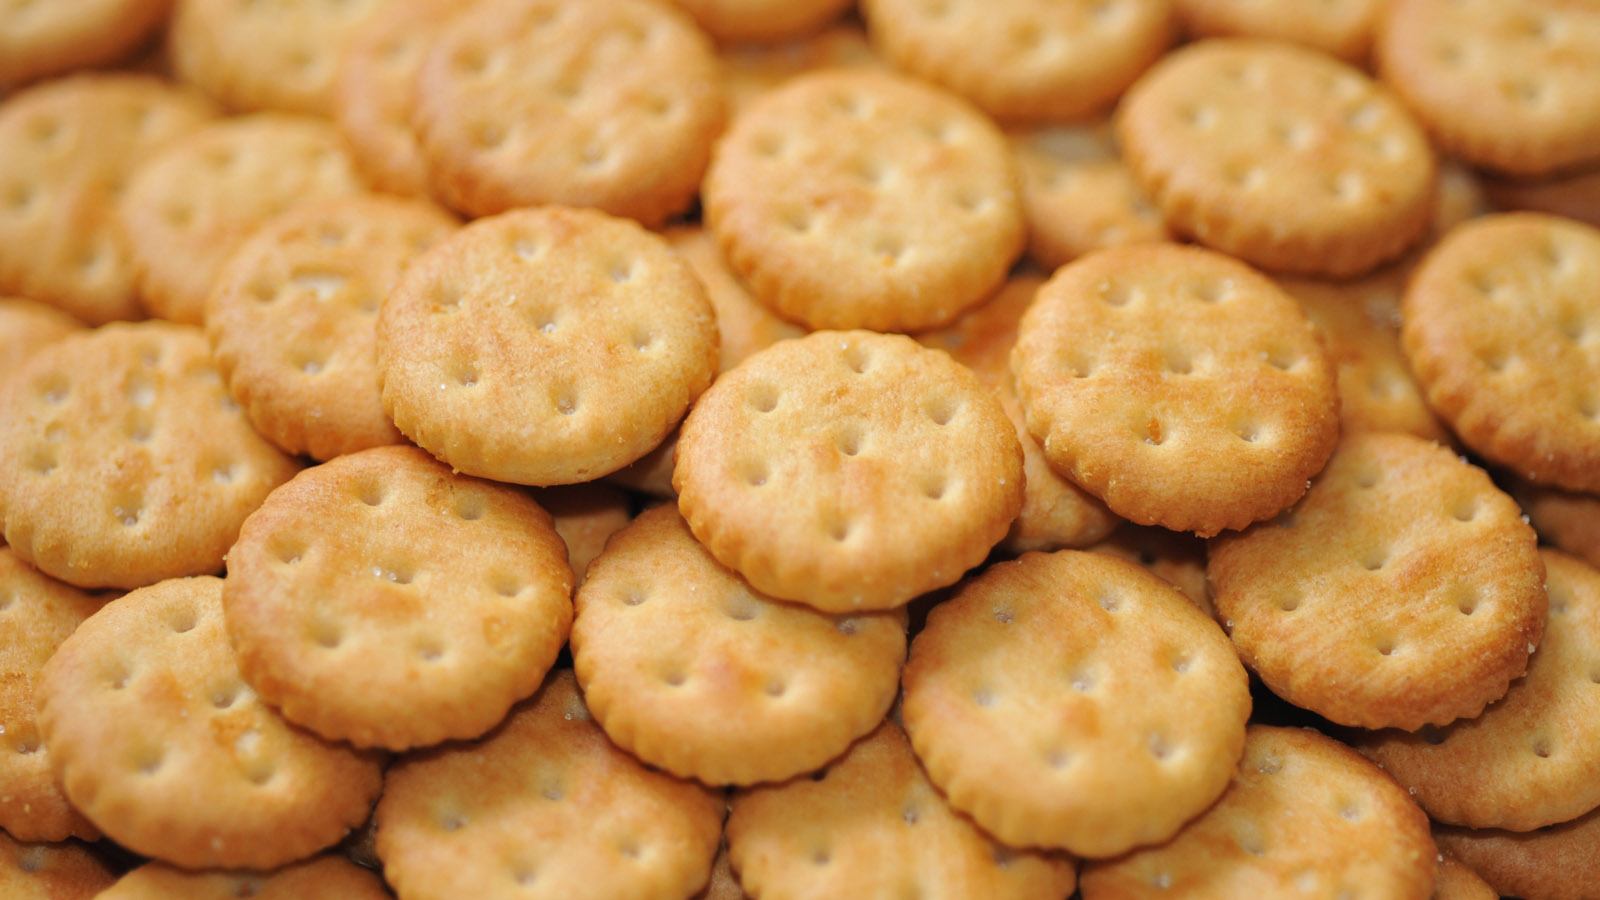 biscuit desktop background picture